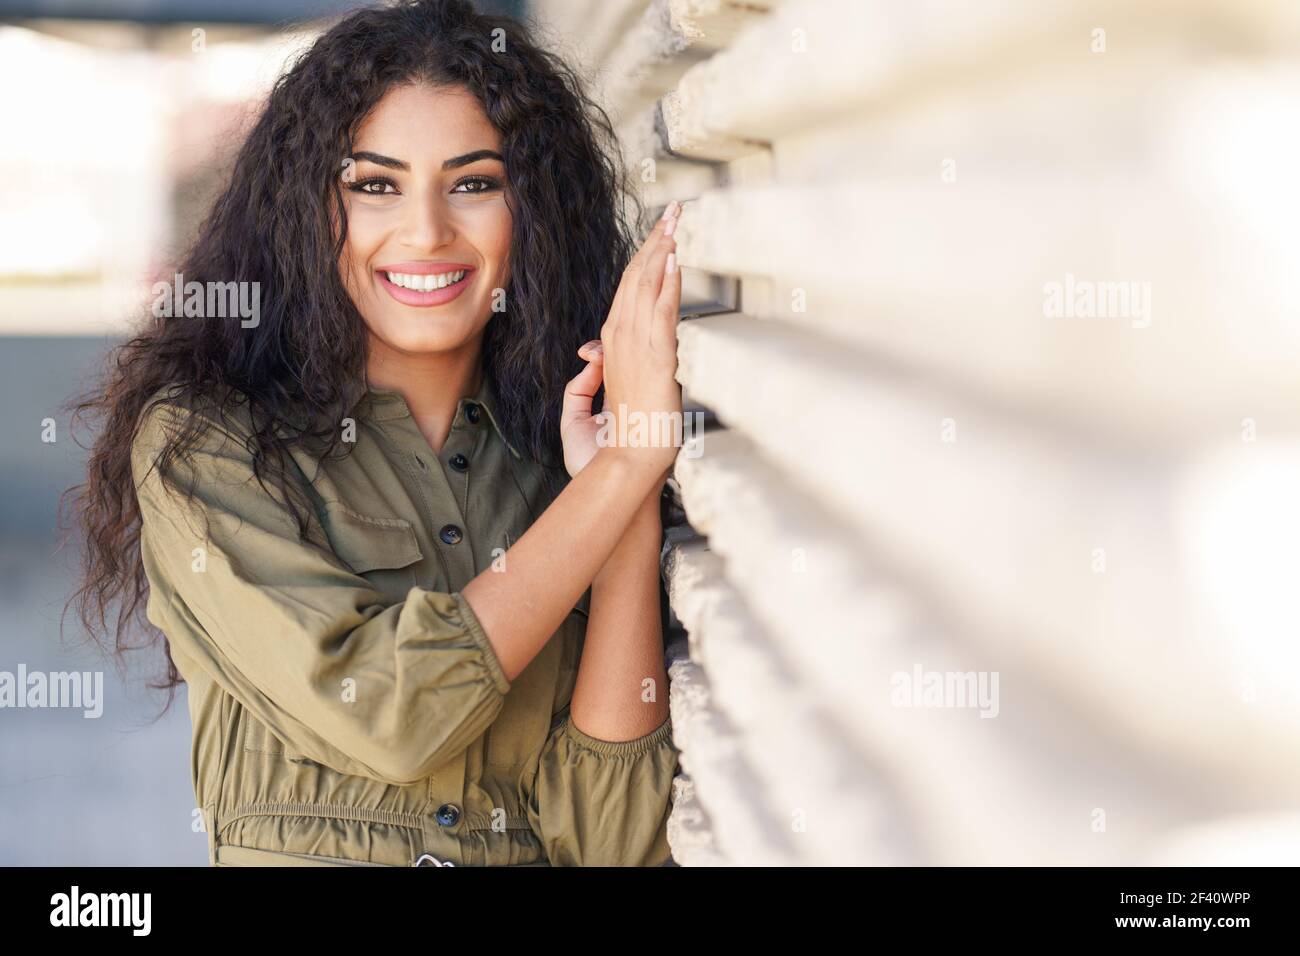 Jeune femme arabe aux cheveux bouclés souriant à l'extérieur. Jeune femme arabe avec des cheveux bouclés à l'extérieur Banque D'Images